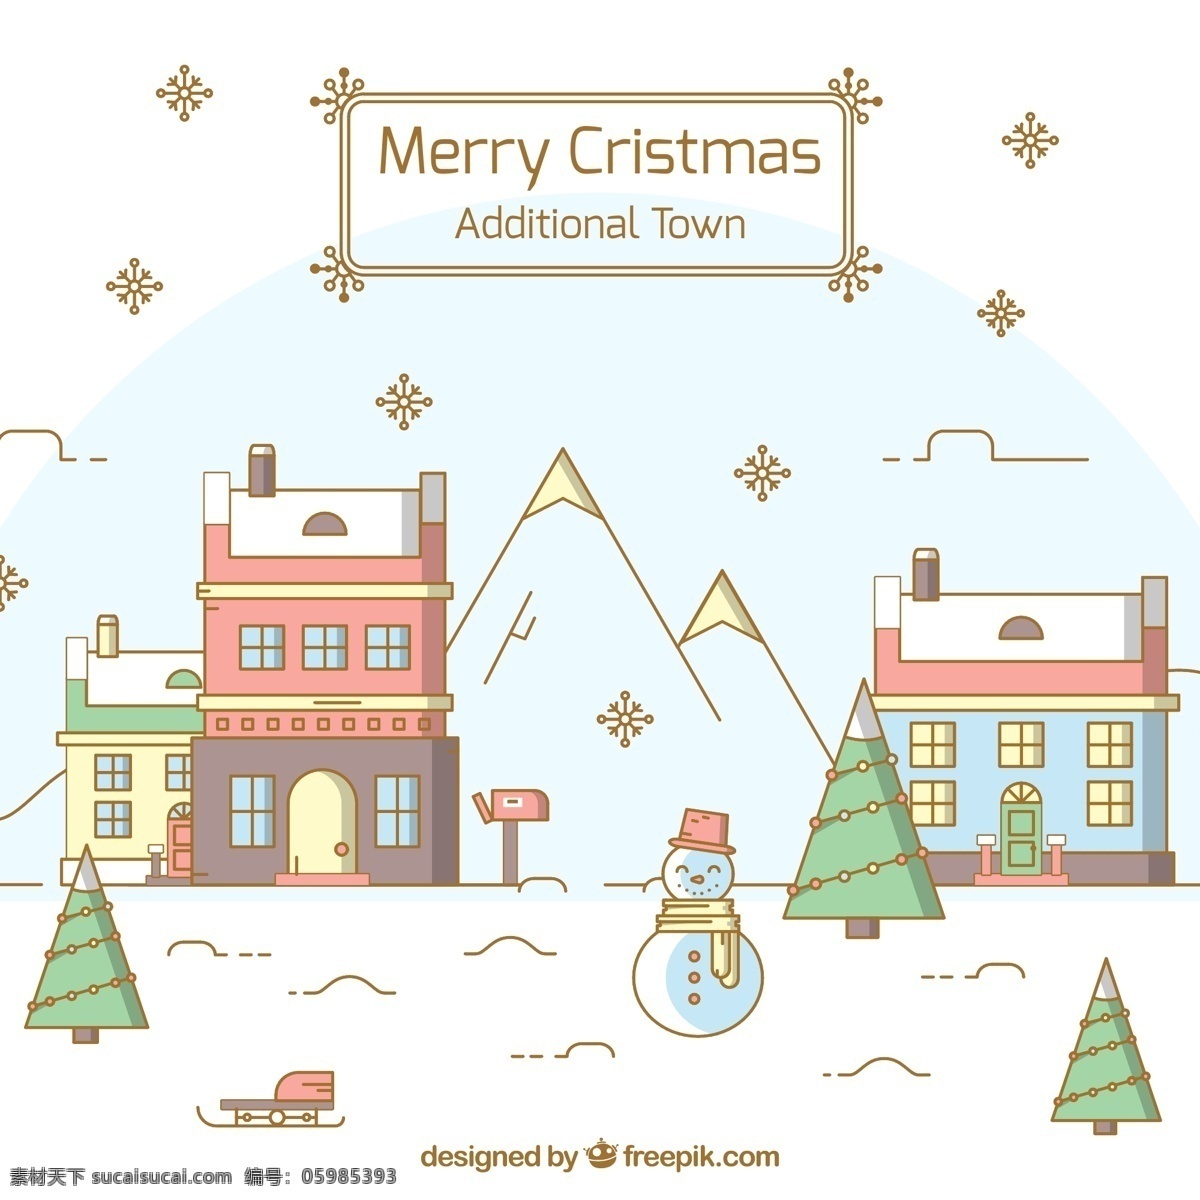 可爱圣诞小镇 可爱 圣诞 小镇 房屋 圣诞树 雪山 风景 自然景观 人文景观